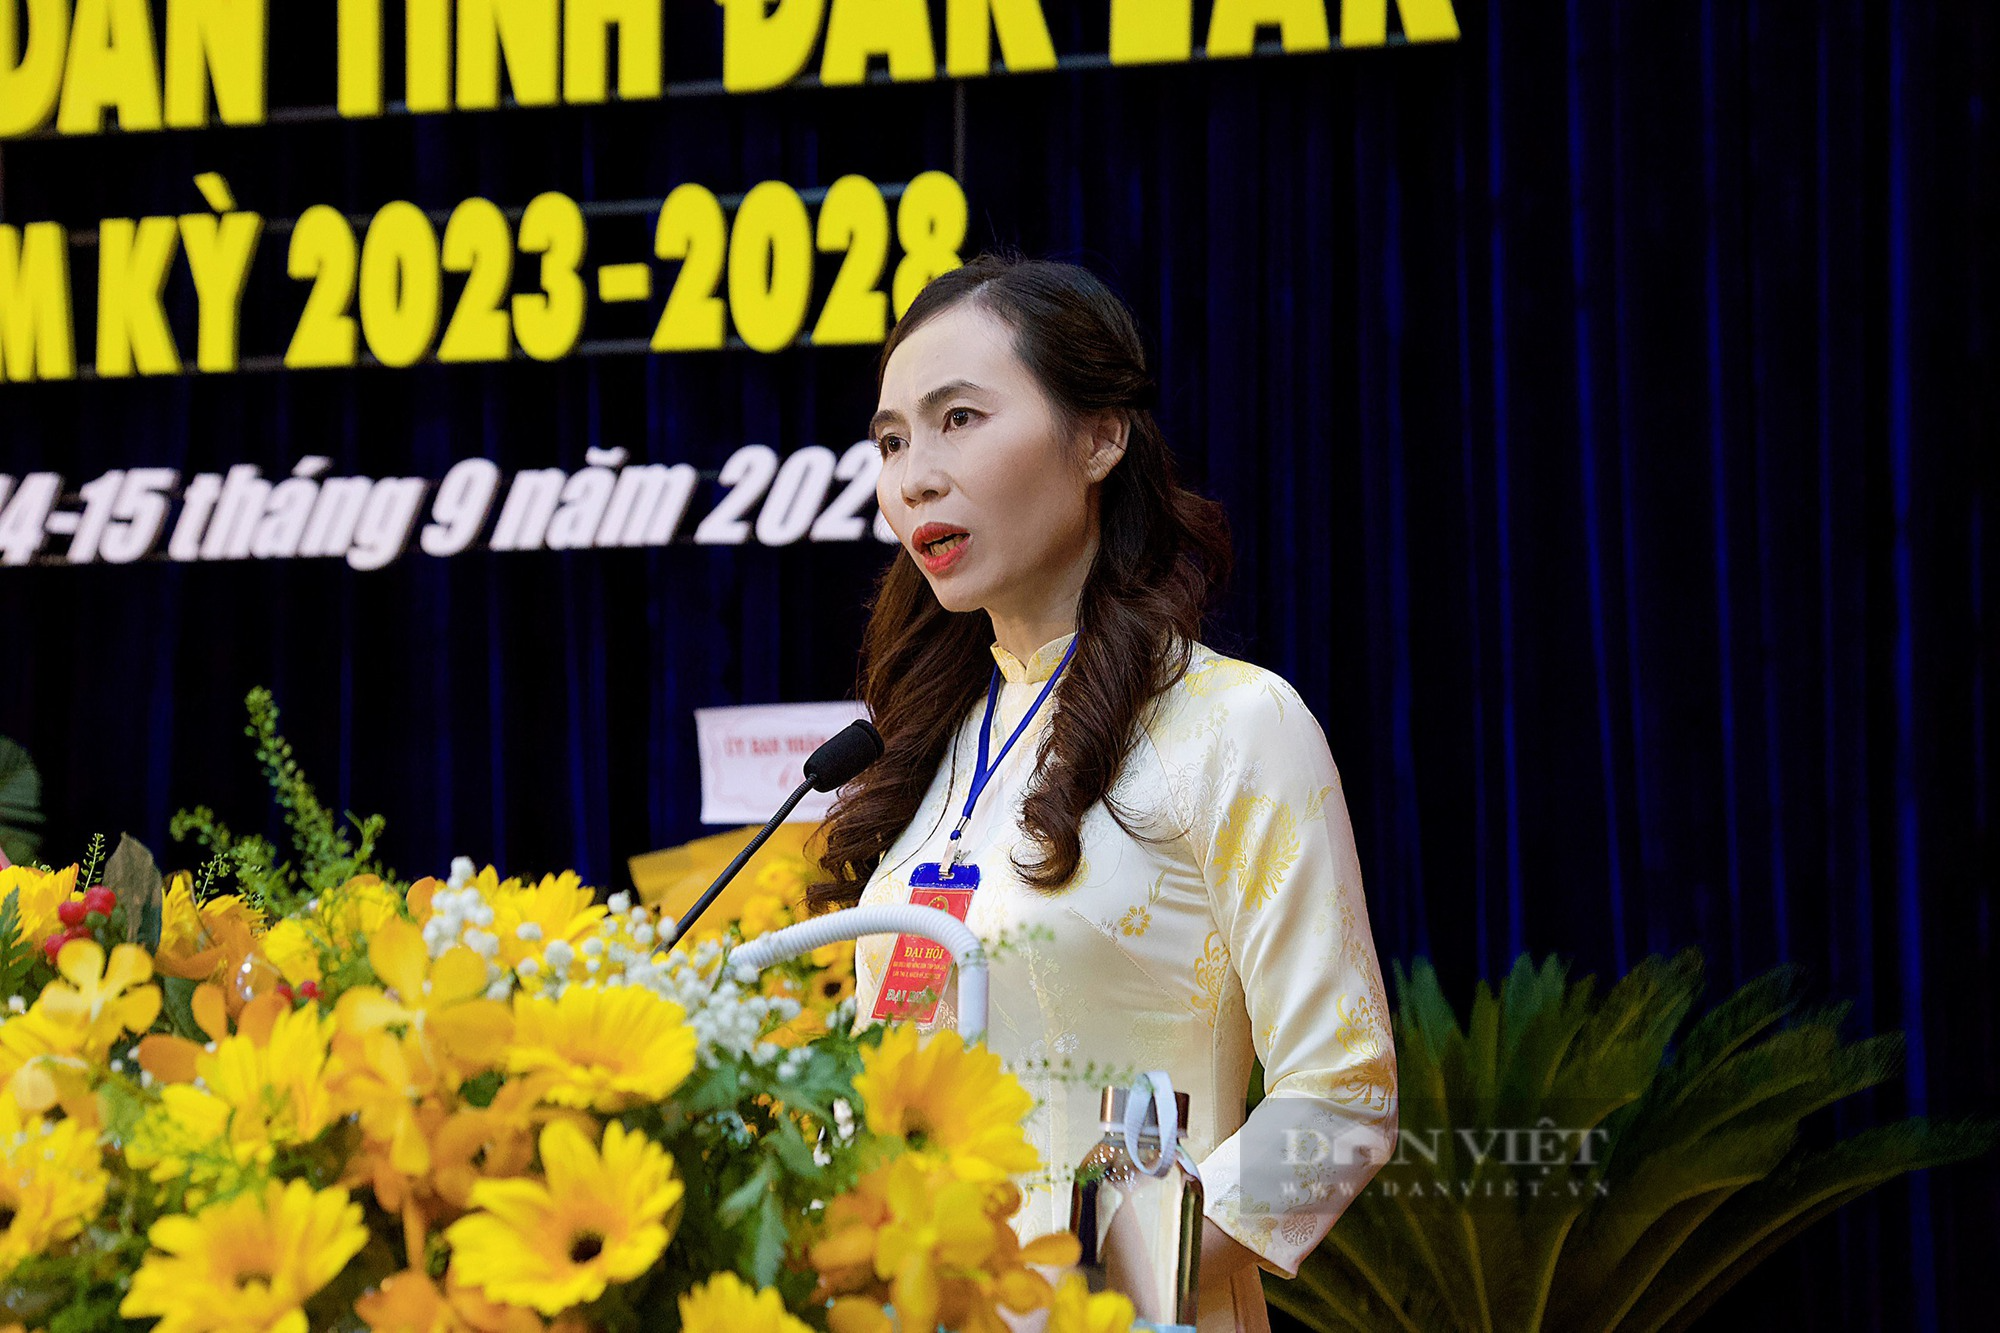 Chân dung bà Lại Thị Loan tái đắc cử Chủ tịch Hội Nông dân tỉnh Đắk Lắk - Ảnh 1.